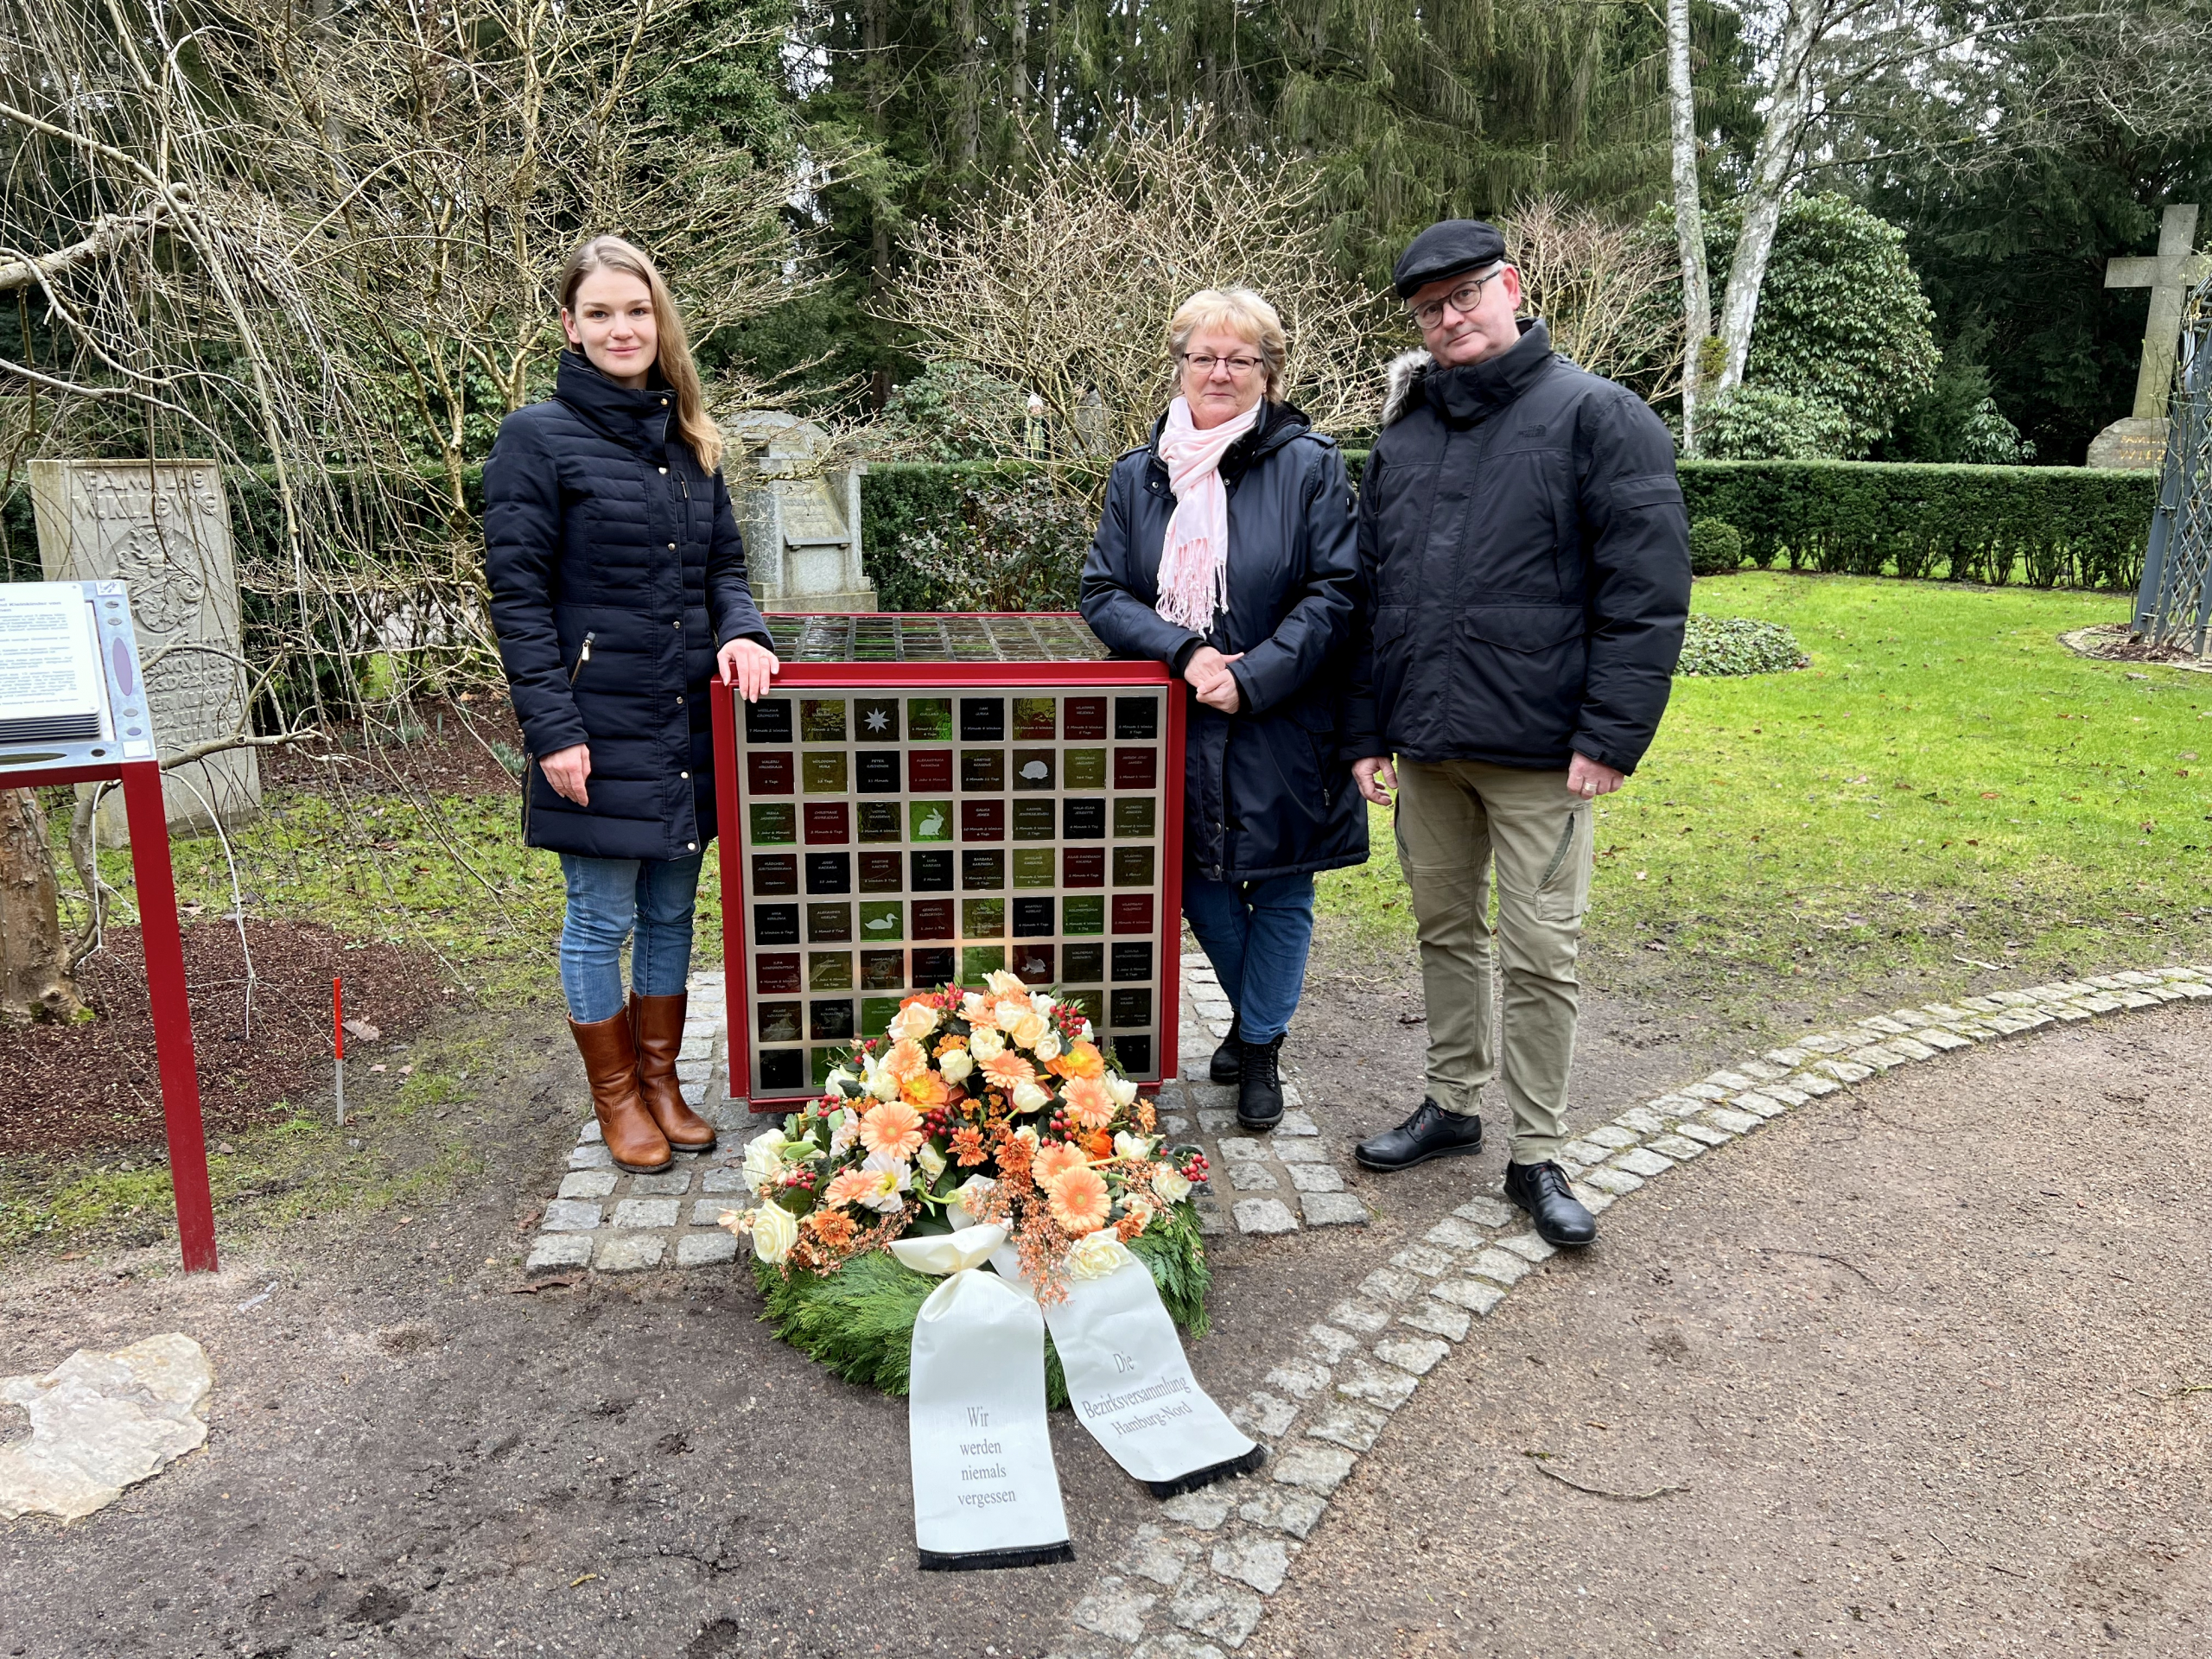 Von links: Isabel Permien (GRÜNE), Martina Lütjens (CDU) und Thomas Domres (SPD) am Gedenkwürfel für die verstorbenen Säuglinge und Kleinkinder von Zwangsarbeiterinnen auf dem Friedhof Ohlsdorf im „Garten der Frauen“. Sie legten einen Kranz zum Gedenken der Opfer in der NS-Zeit nieder.